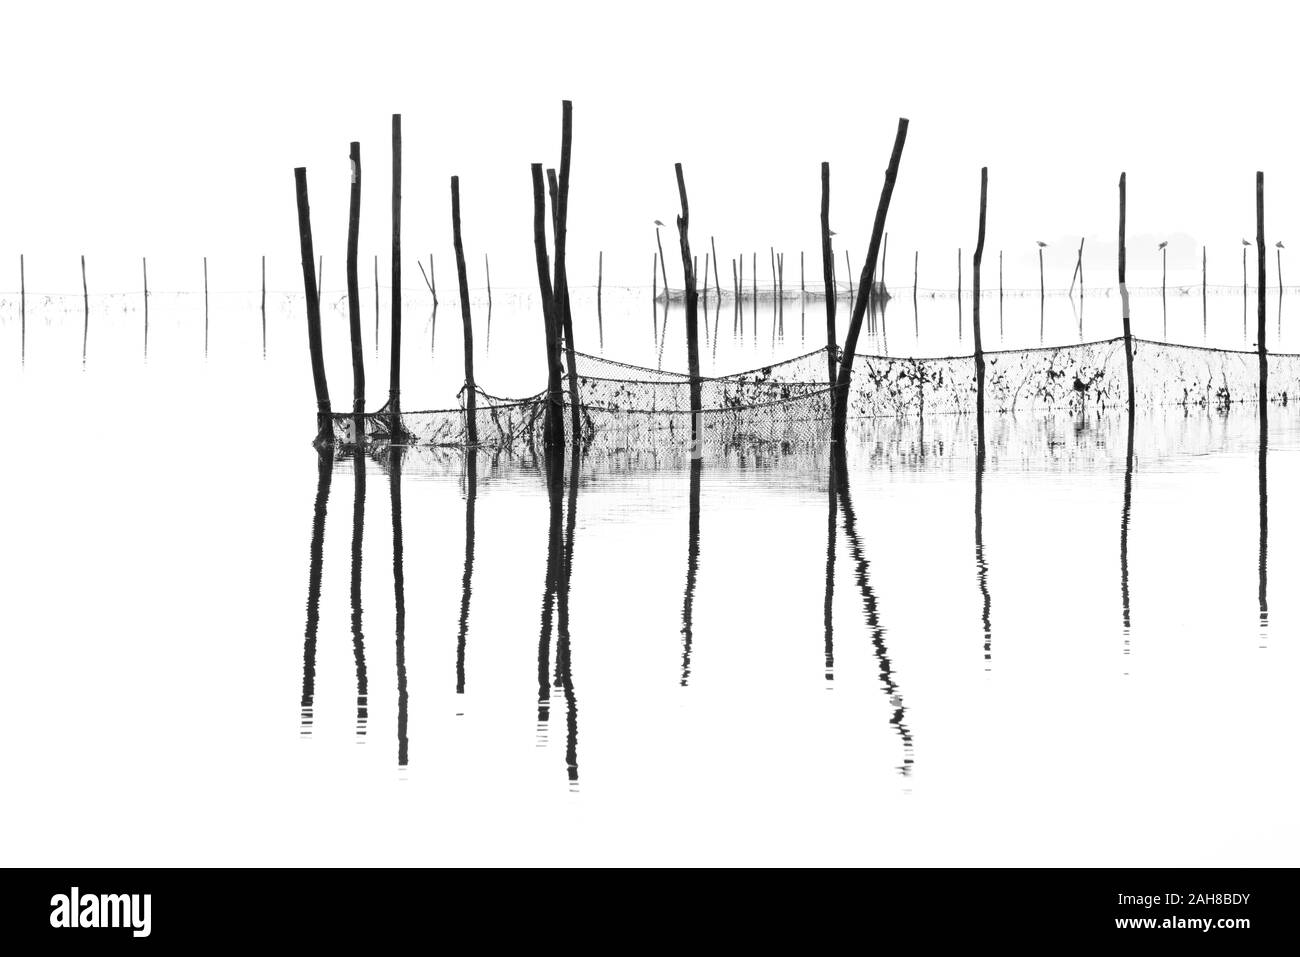 Caratteristico paesaggio foggy veneziano bianco e nero, con reti da pesce e pali che emergono dall'acqua Foto Stock